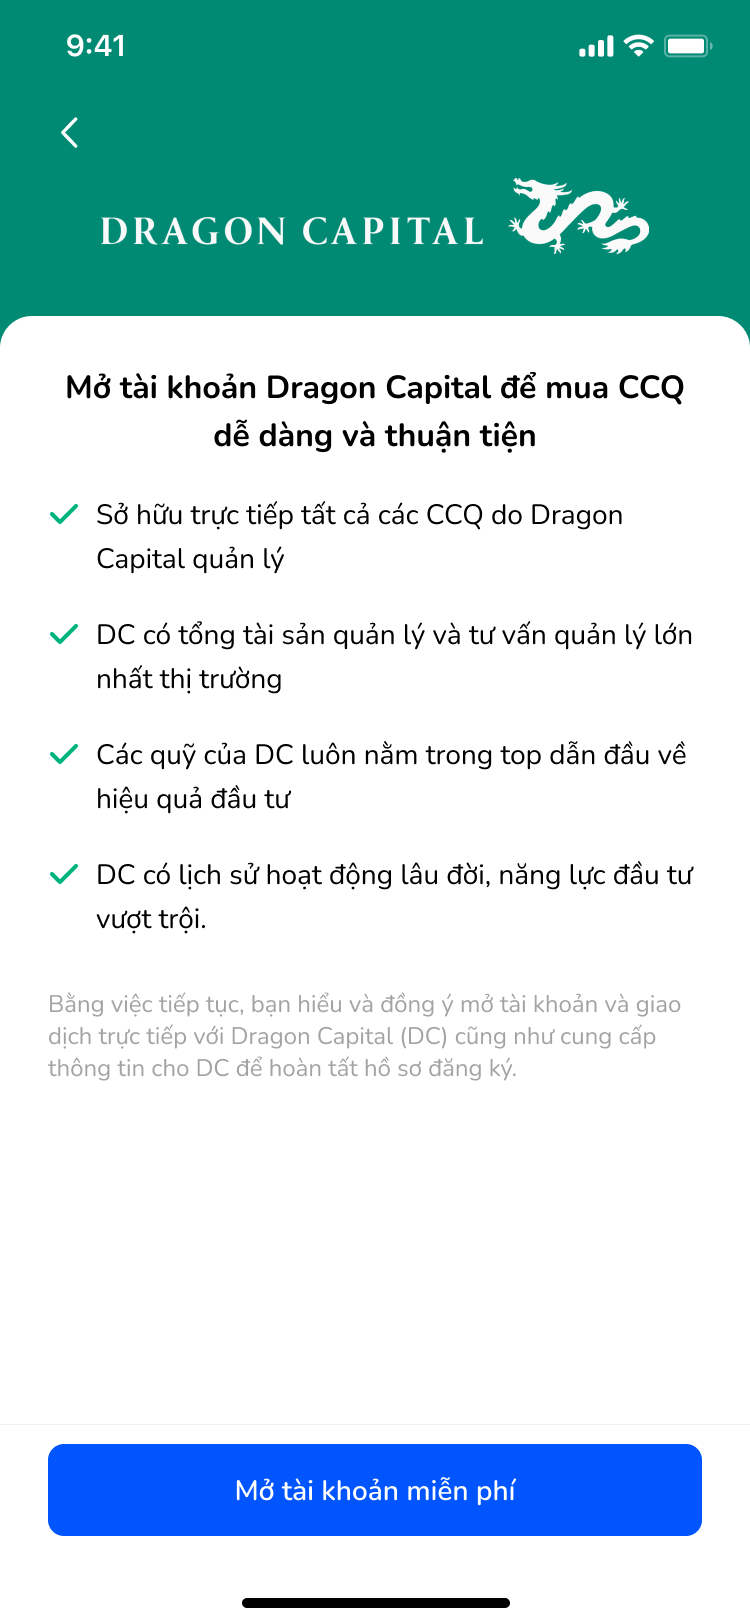 Chọn Mở tài khoản với Dragon Capital: